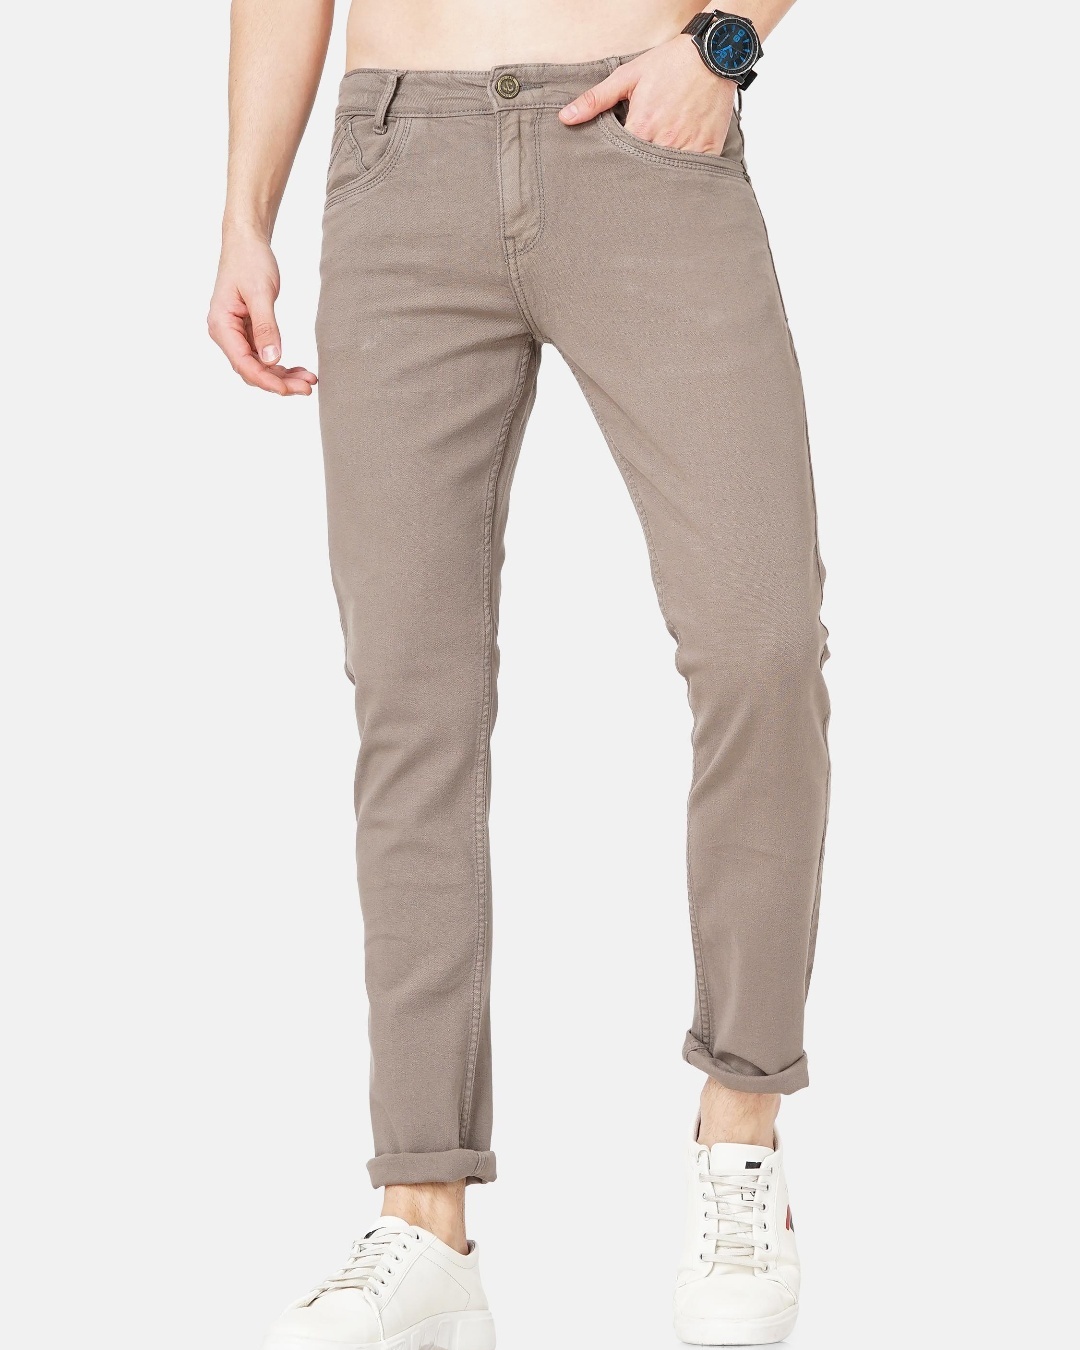 Buy Men's Brown Slim Fit Jeans for Men Brown Online at Bewakoof